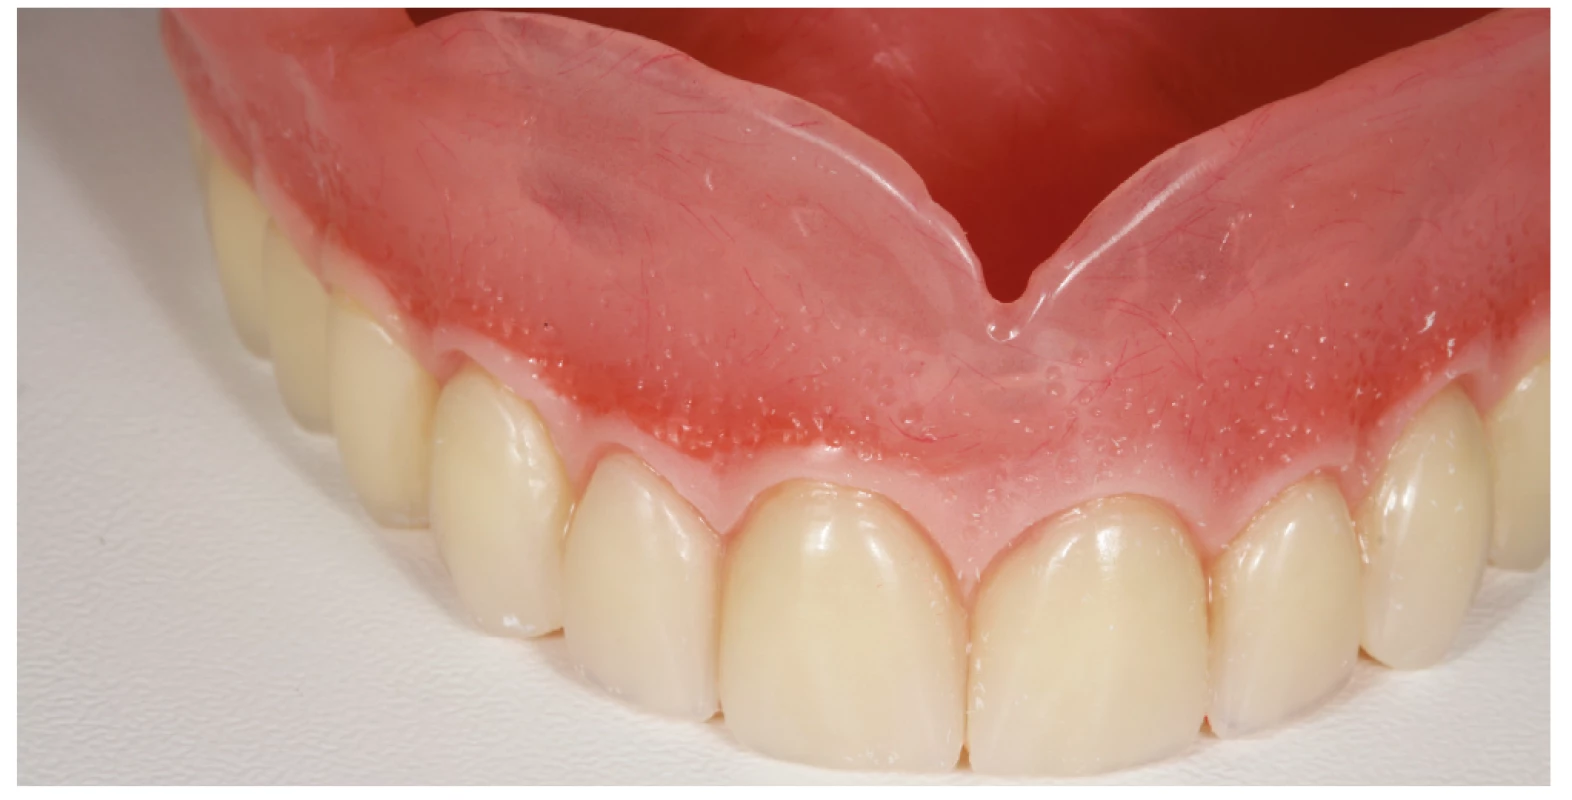 Zhotovená horní totální
náhrada<br>
Fig. 4
The upper complete denture